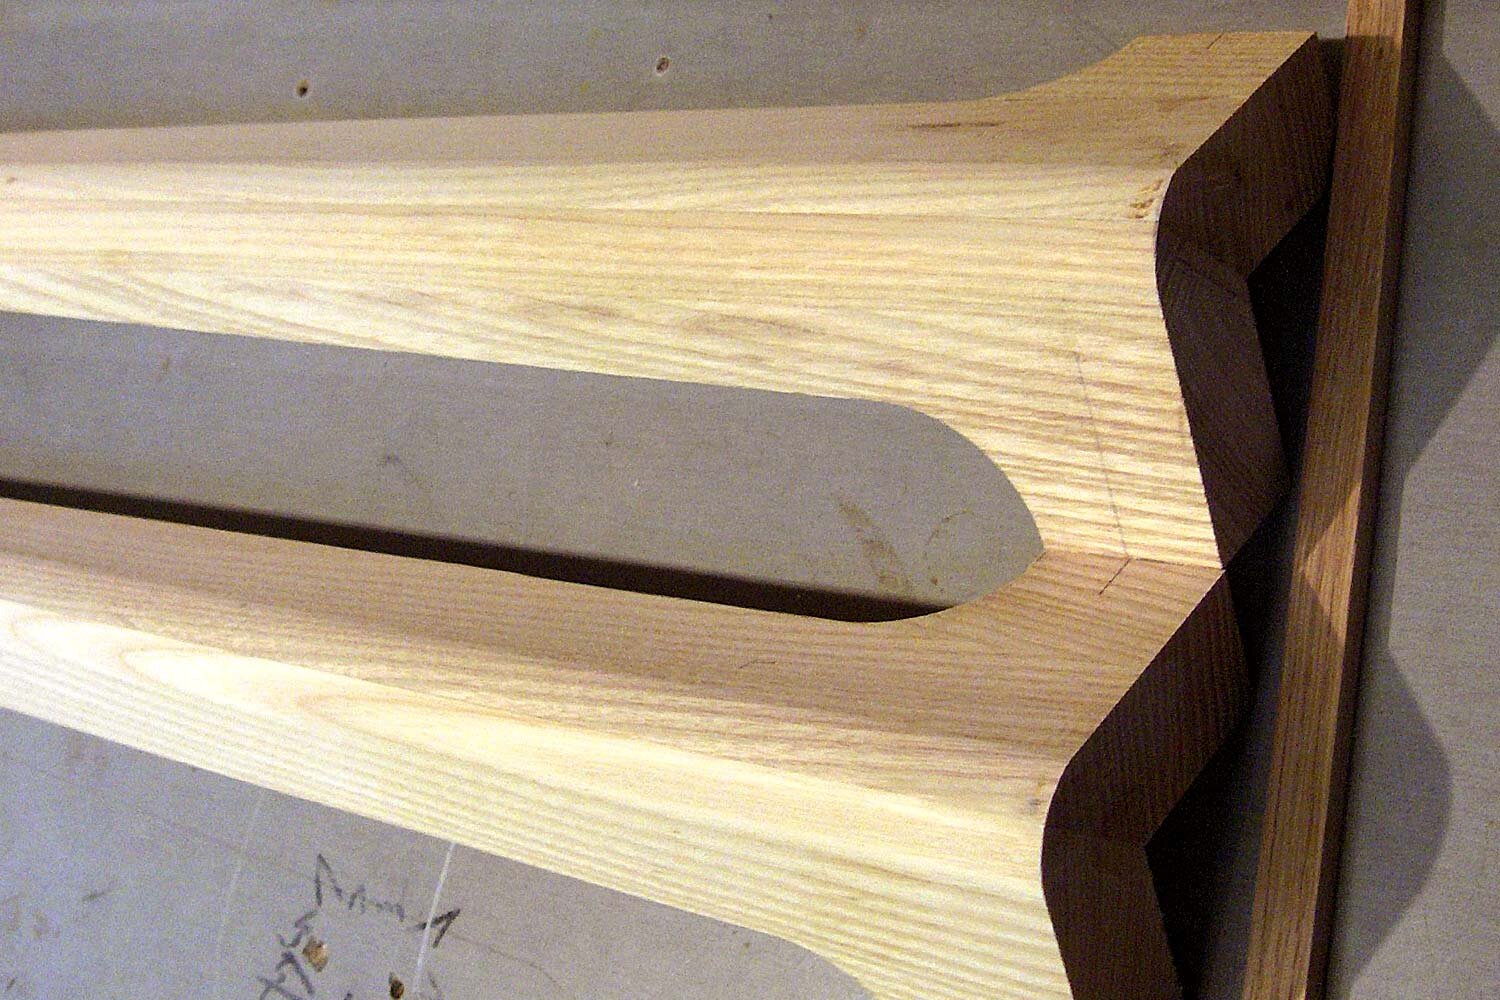 shaped-oak-table-legs.jpg